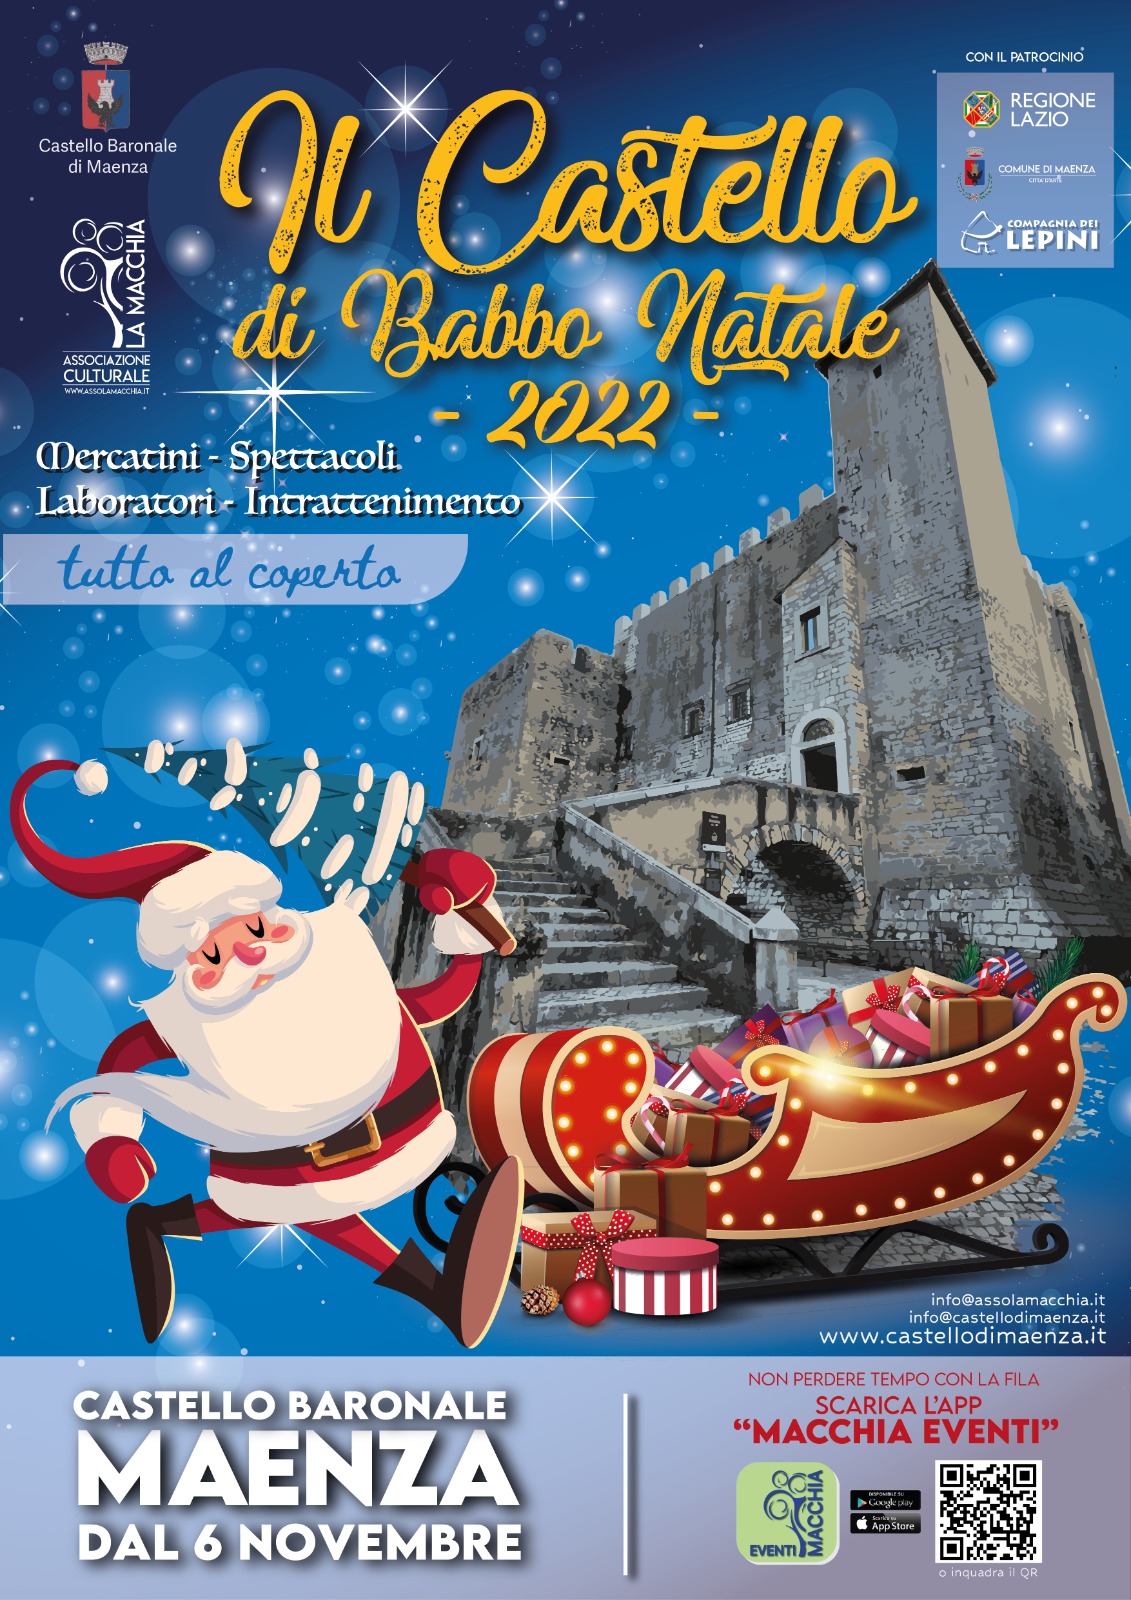 Maenza: Il Castello di Babbo Natale 2022 @ Castello Baronale di Maenza